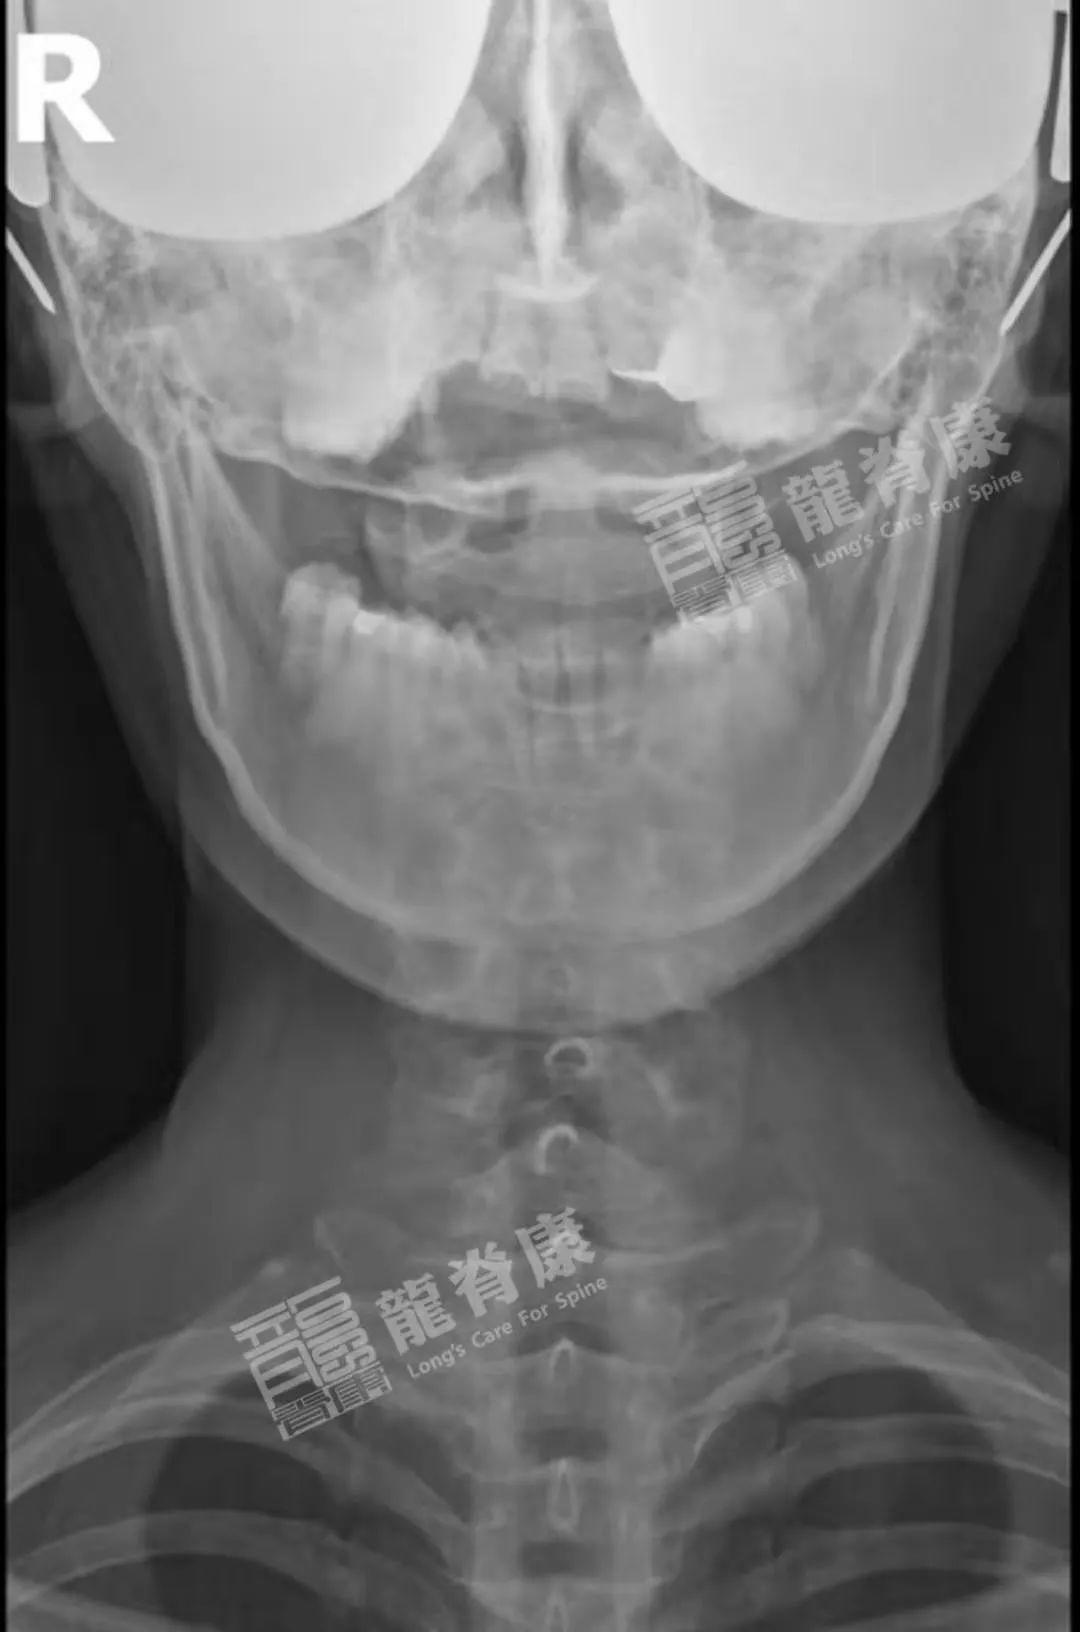 颈椎X线诊断的内容及其解读 - 好医术早读文章 - 好医术-赋能医生守护生命